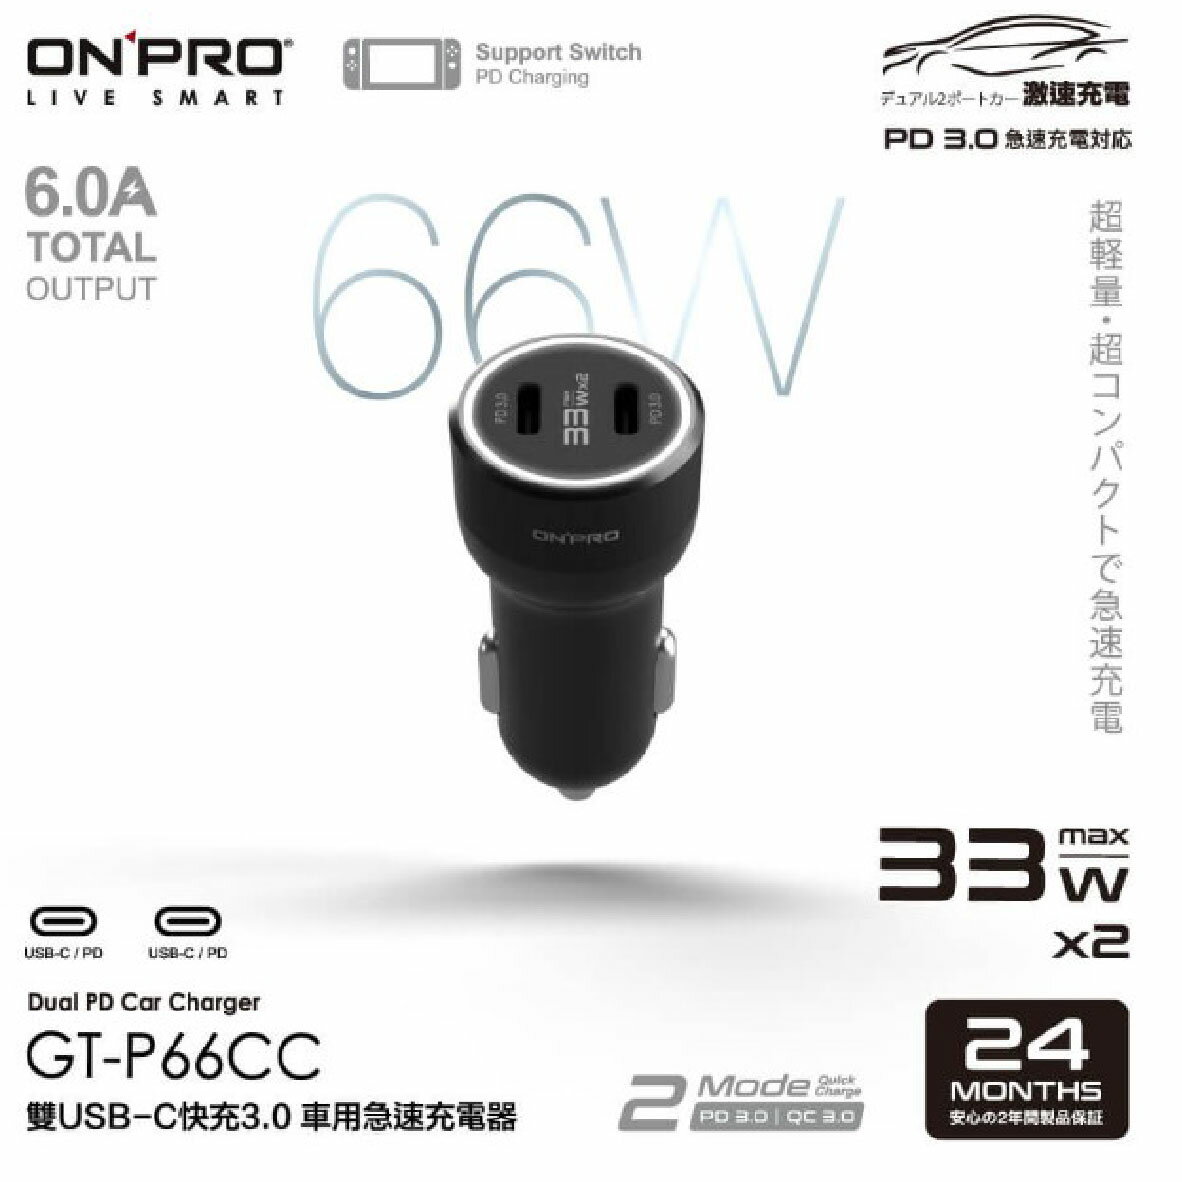 真便宜 ONPRO GT-P66CC-BK 雙USB-C快充3.0 66W急速車用充電器